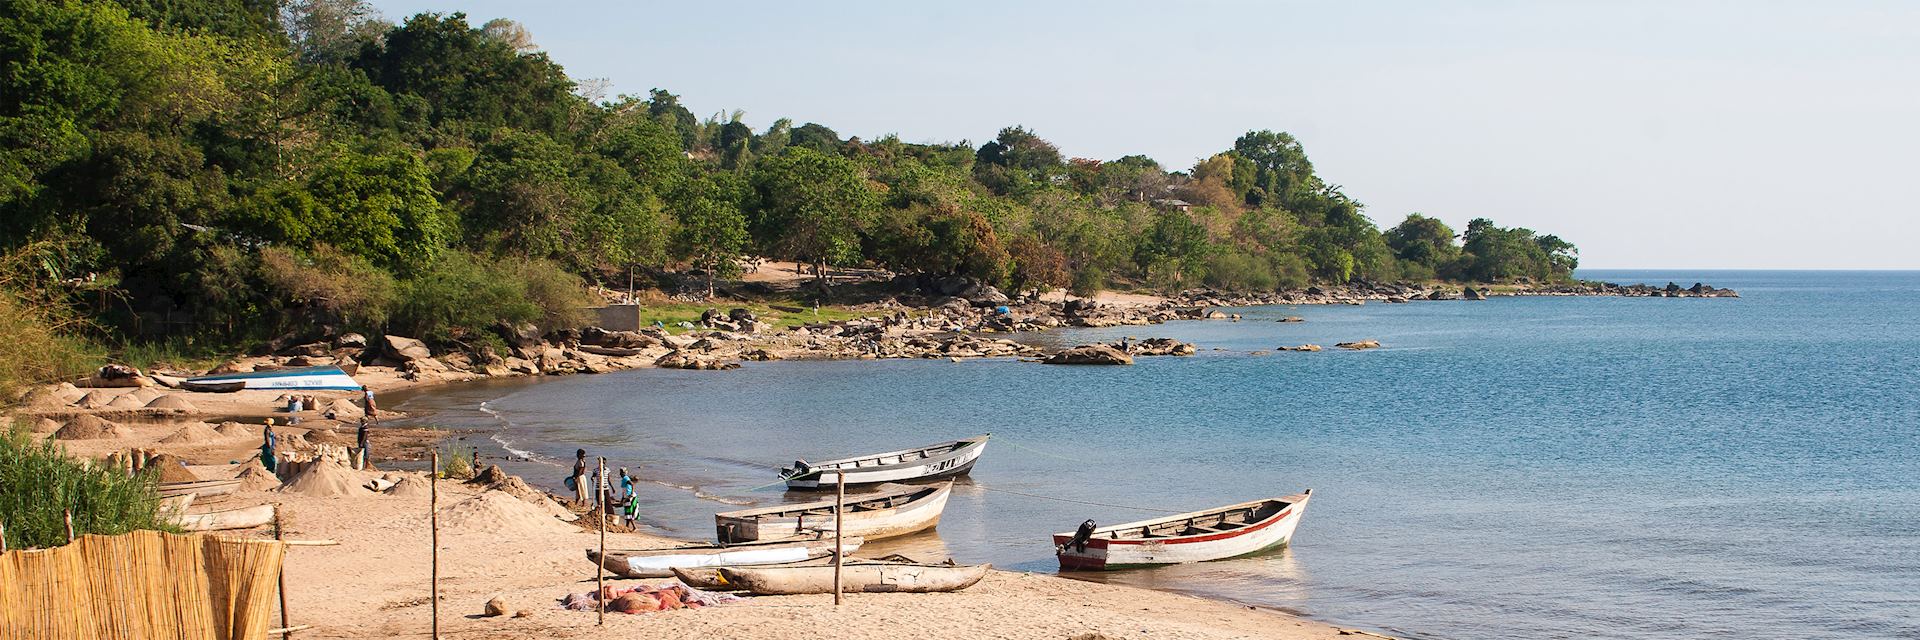 Nkhata Bay, Malawi